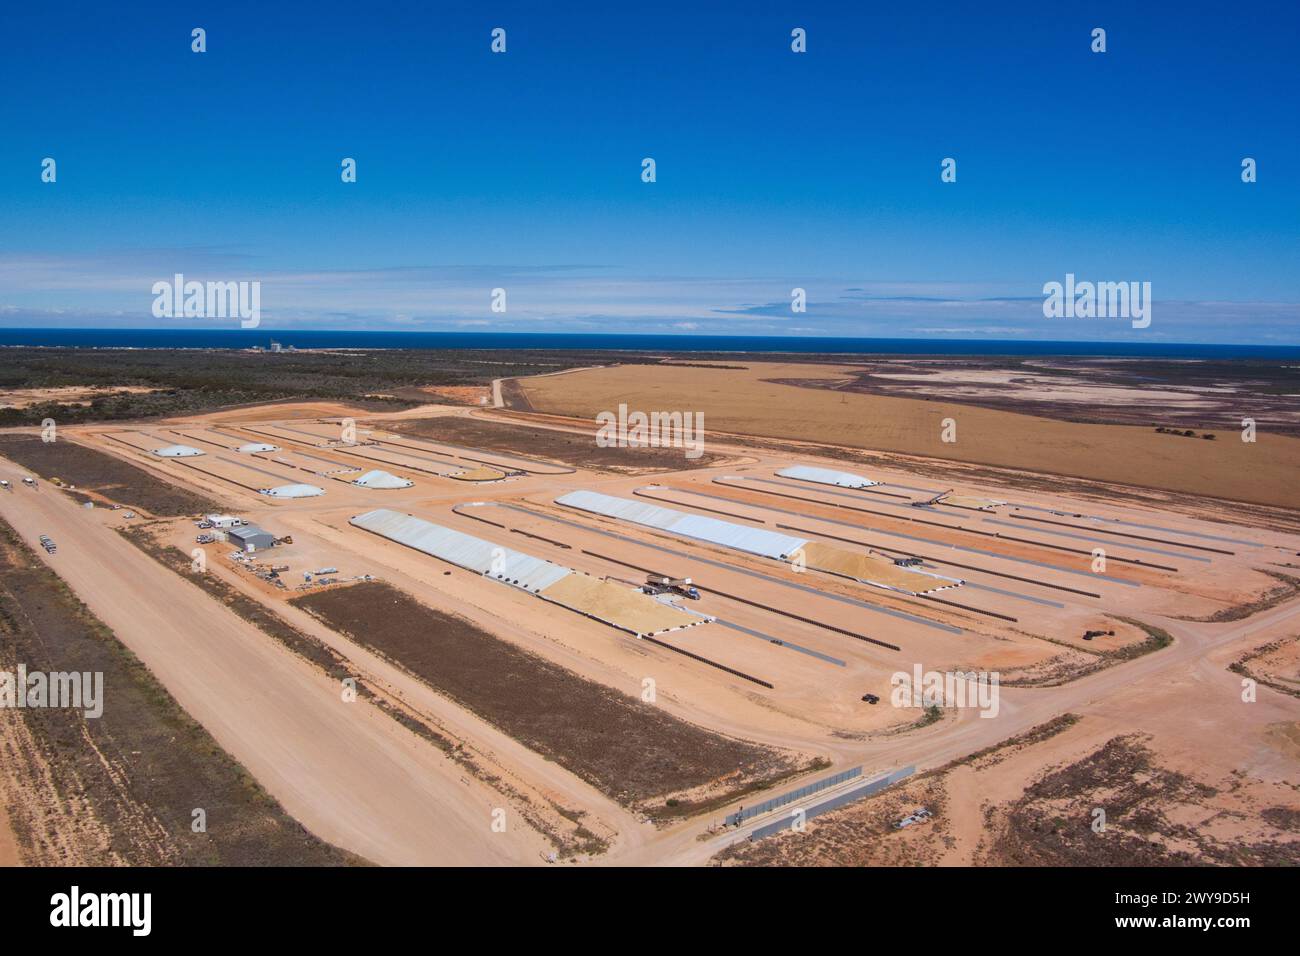 Vol aérien des opérations de soute à céréales de T ports à Lucky Bay en Australie méridionale Banque D'Images